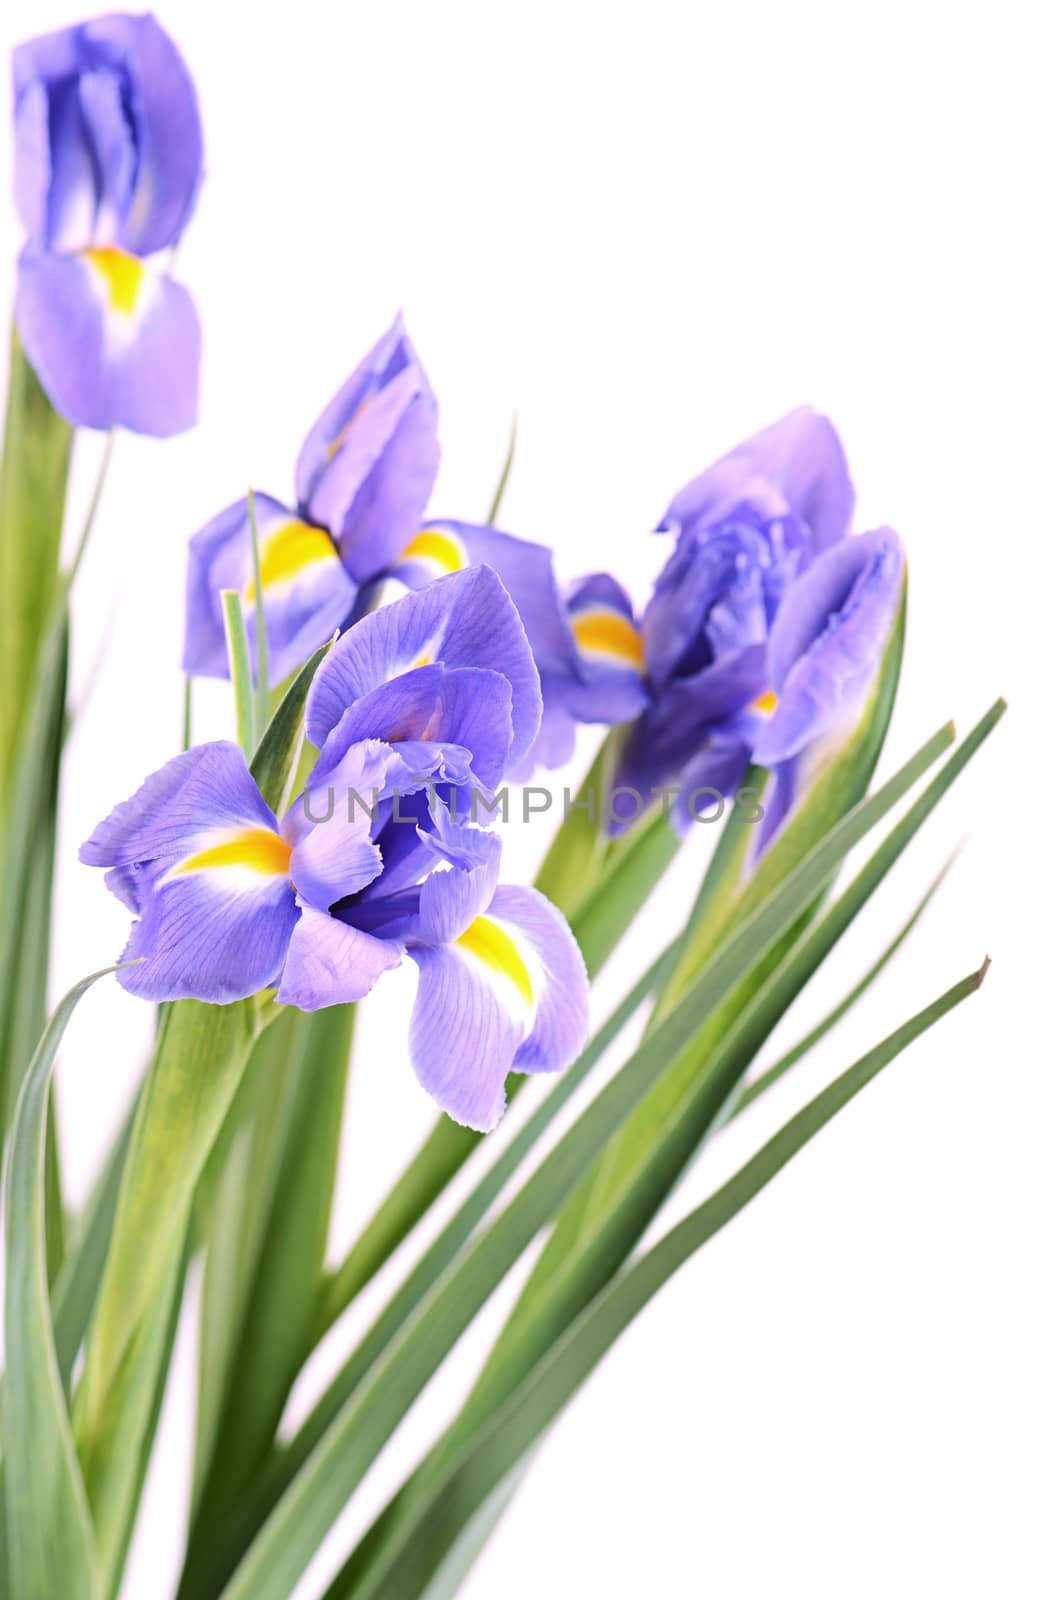 The blue irises isolated on white background